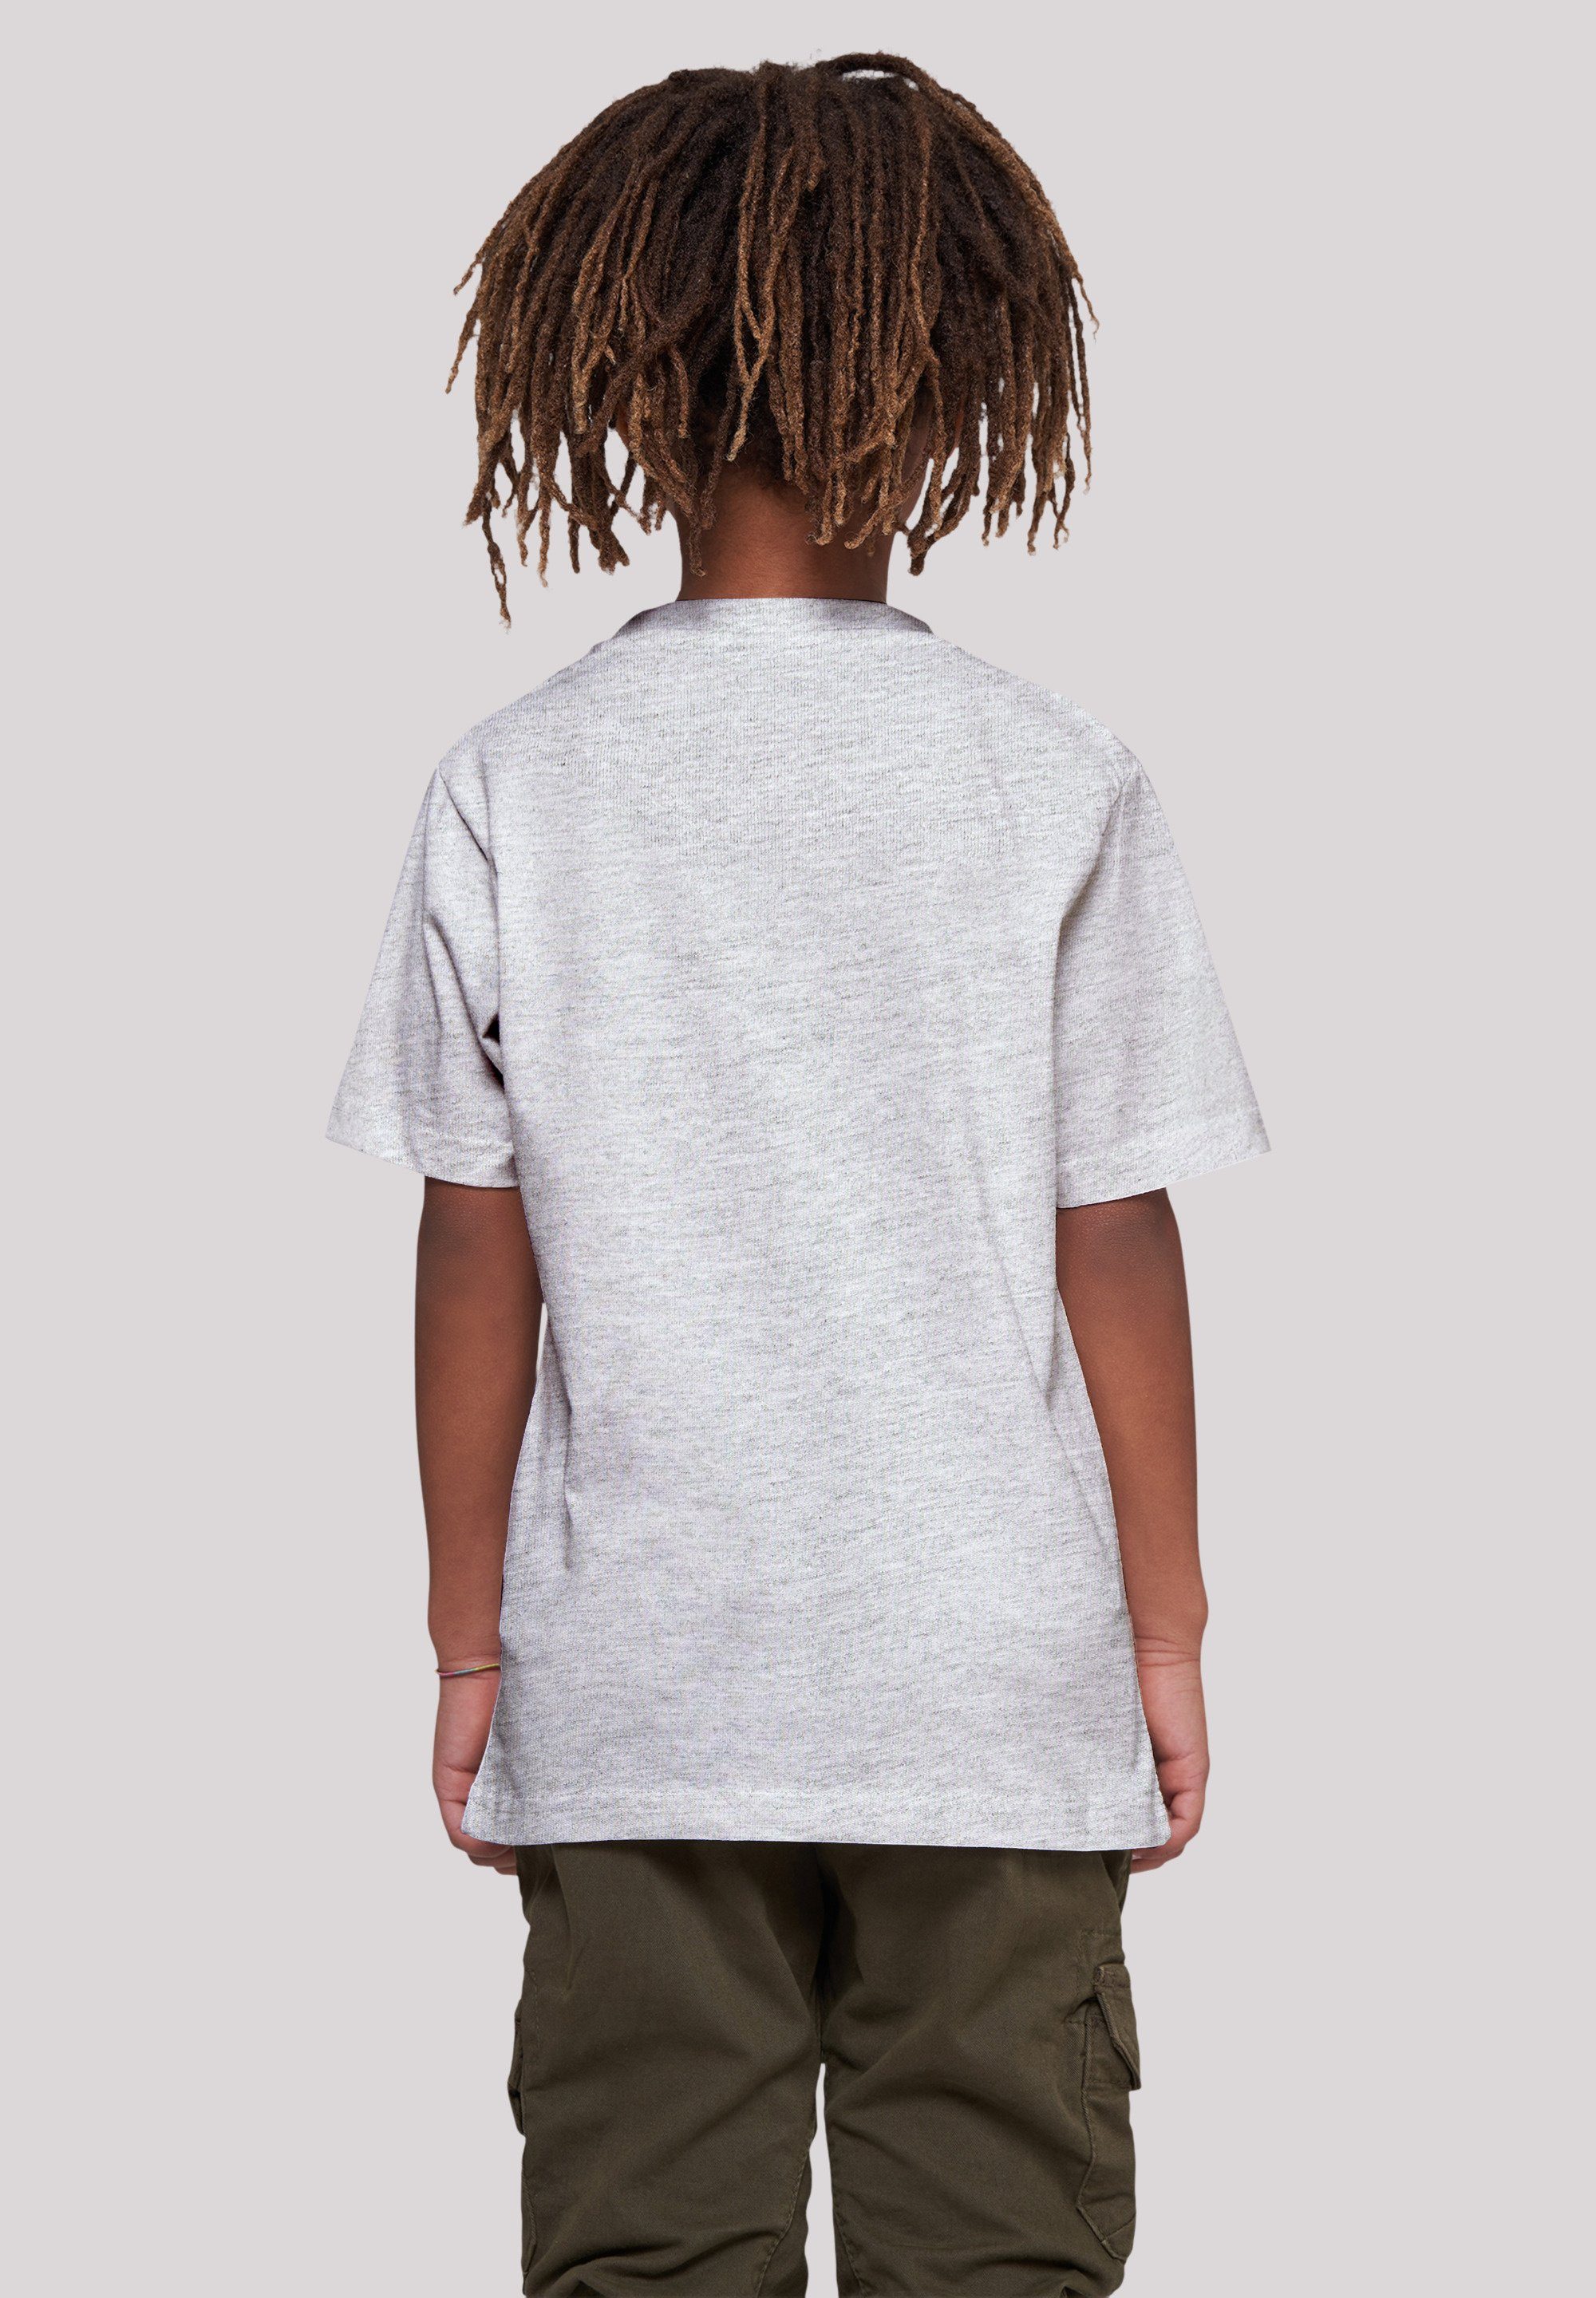 Kranich Japan grey T-Shirt Print F4NT4STIC heather